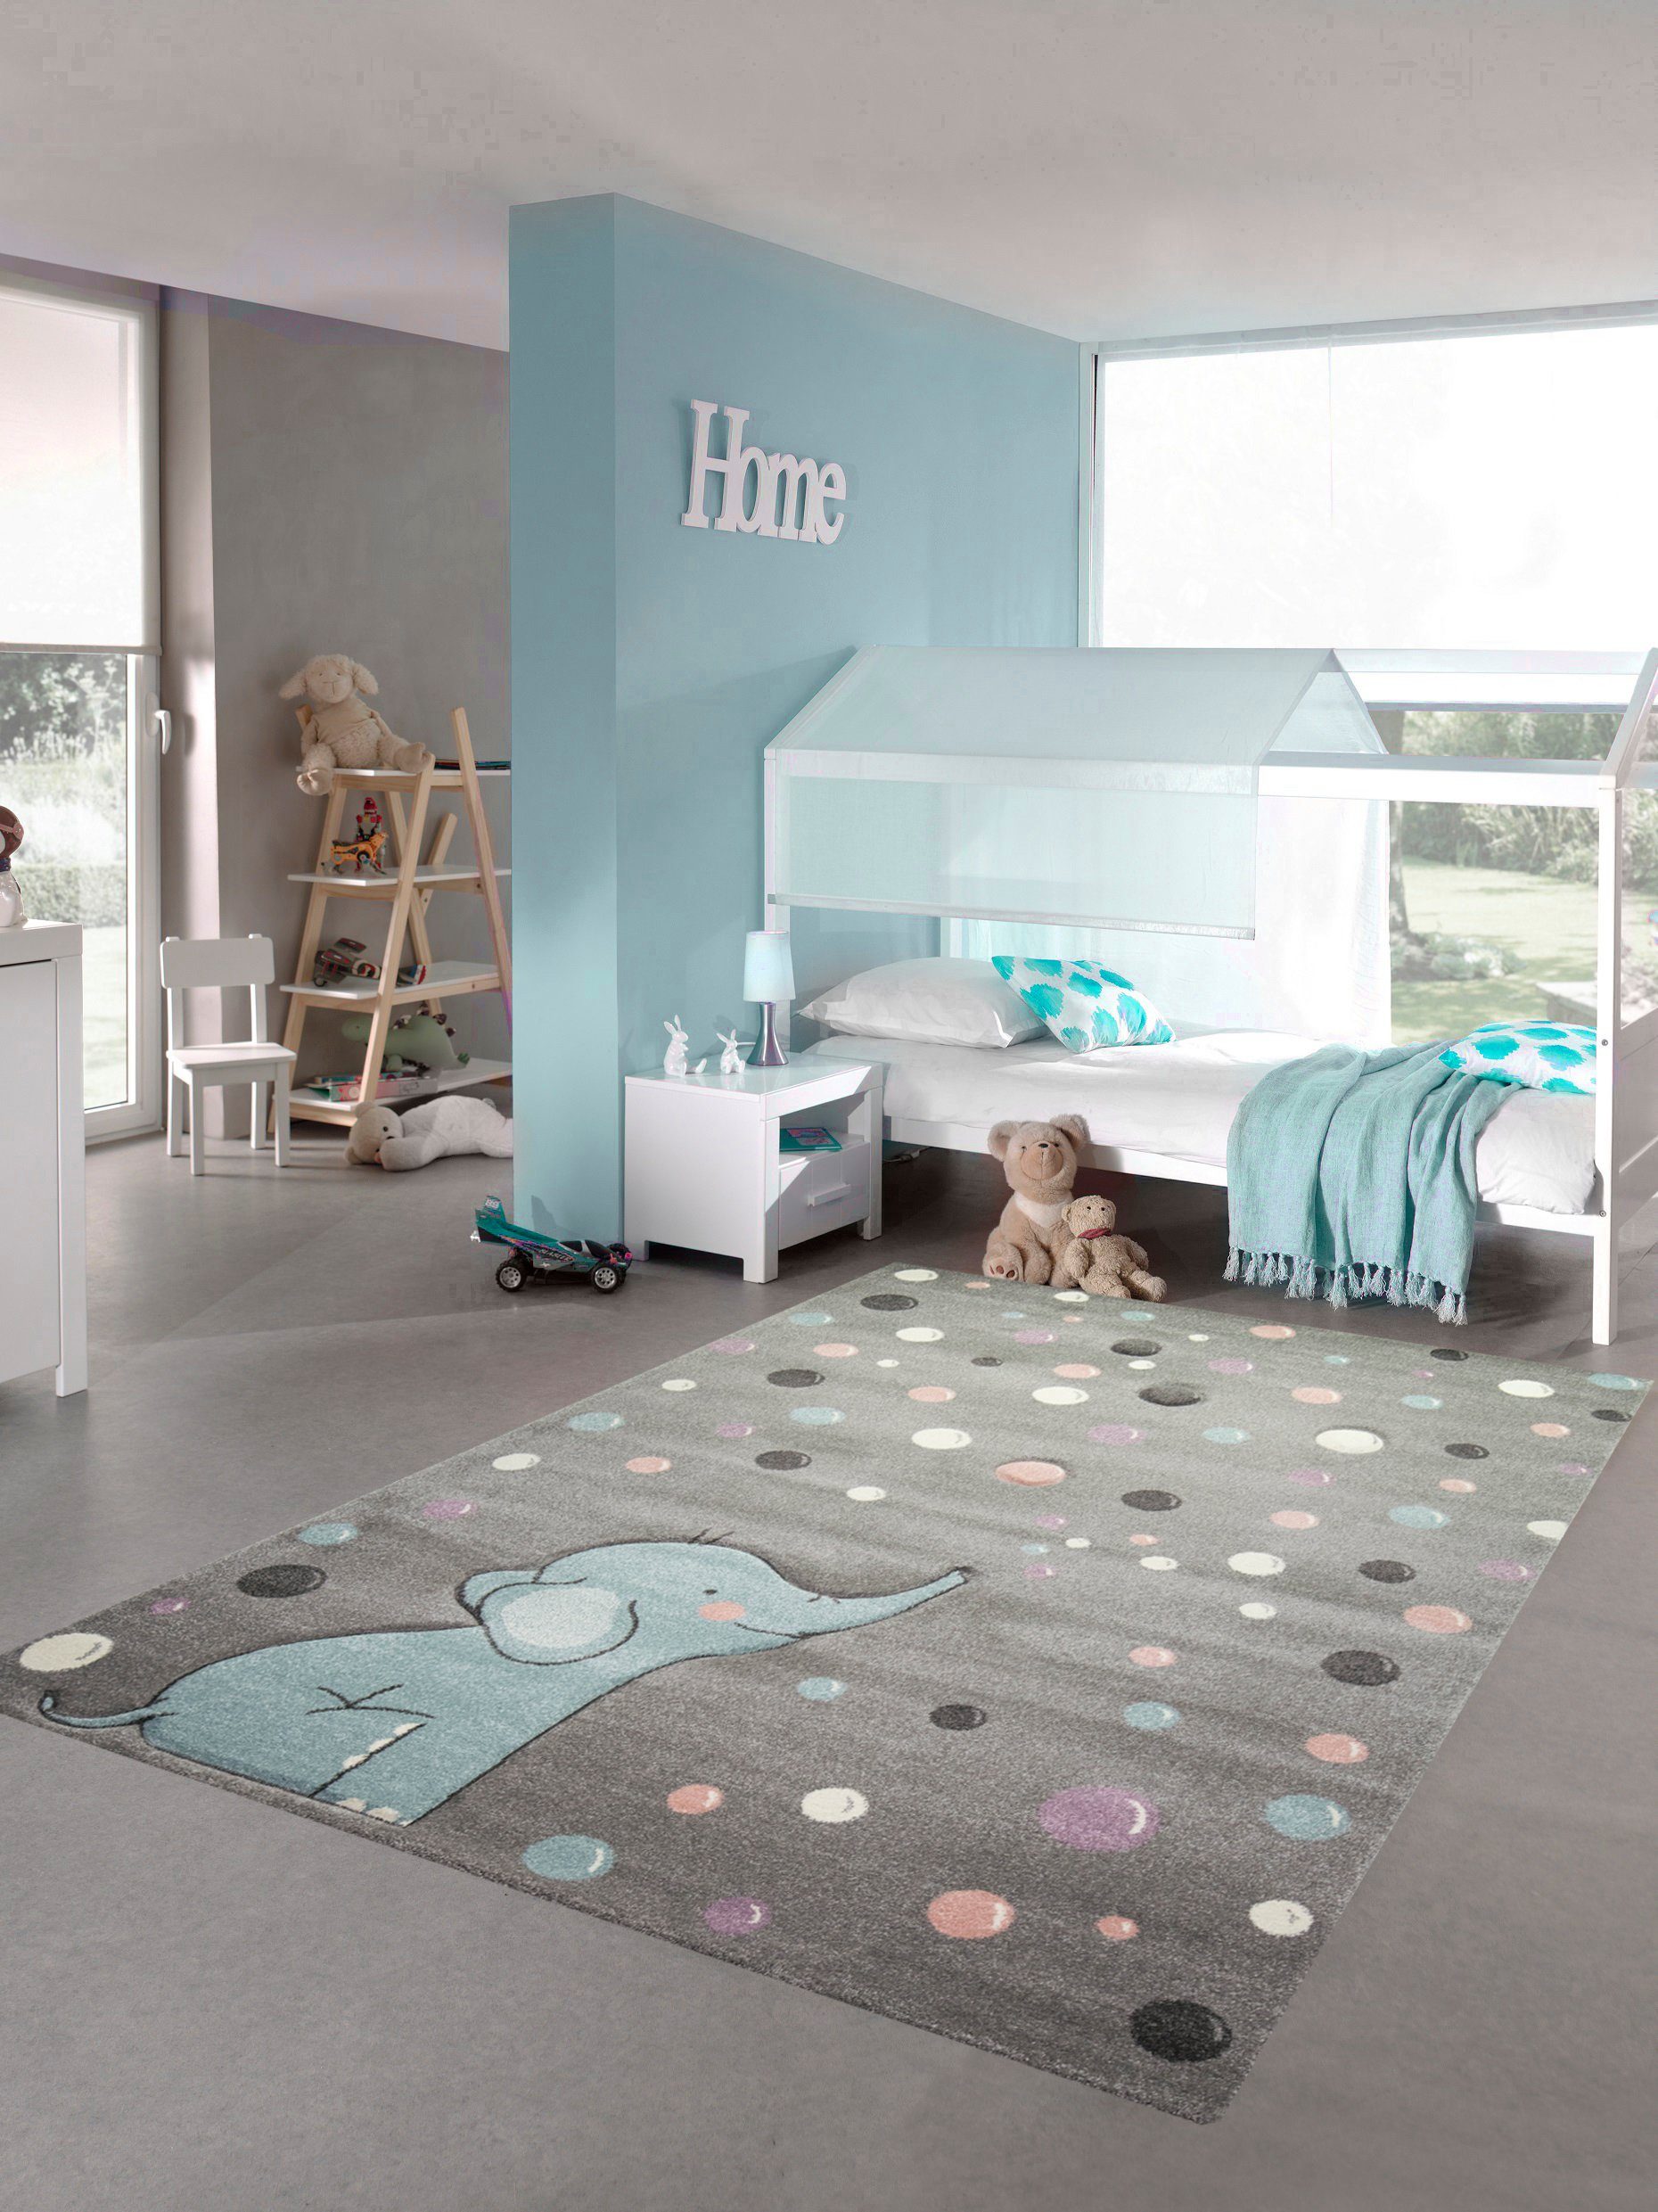 Kinderteppich Kinderteppich Elefant Kinderzimmerteppich mit Punkten in grau blau, Teppich-Traum, rechteckig, Höhe: 13 mm